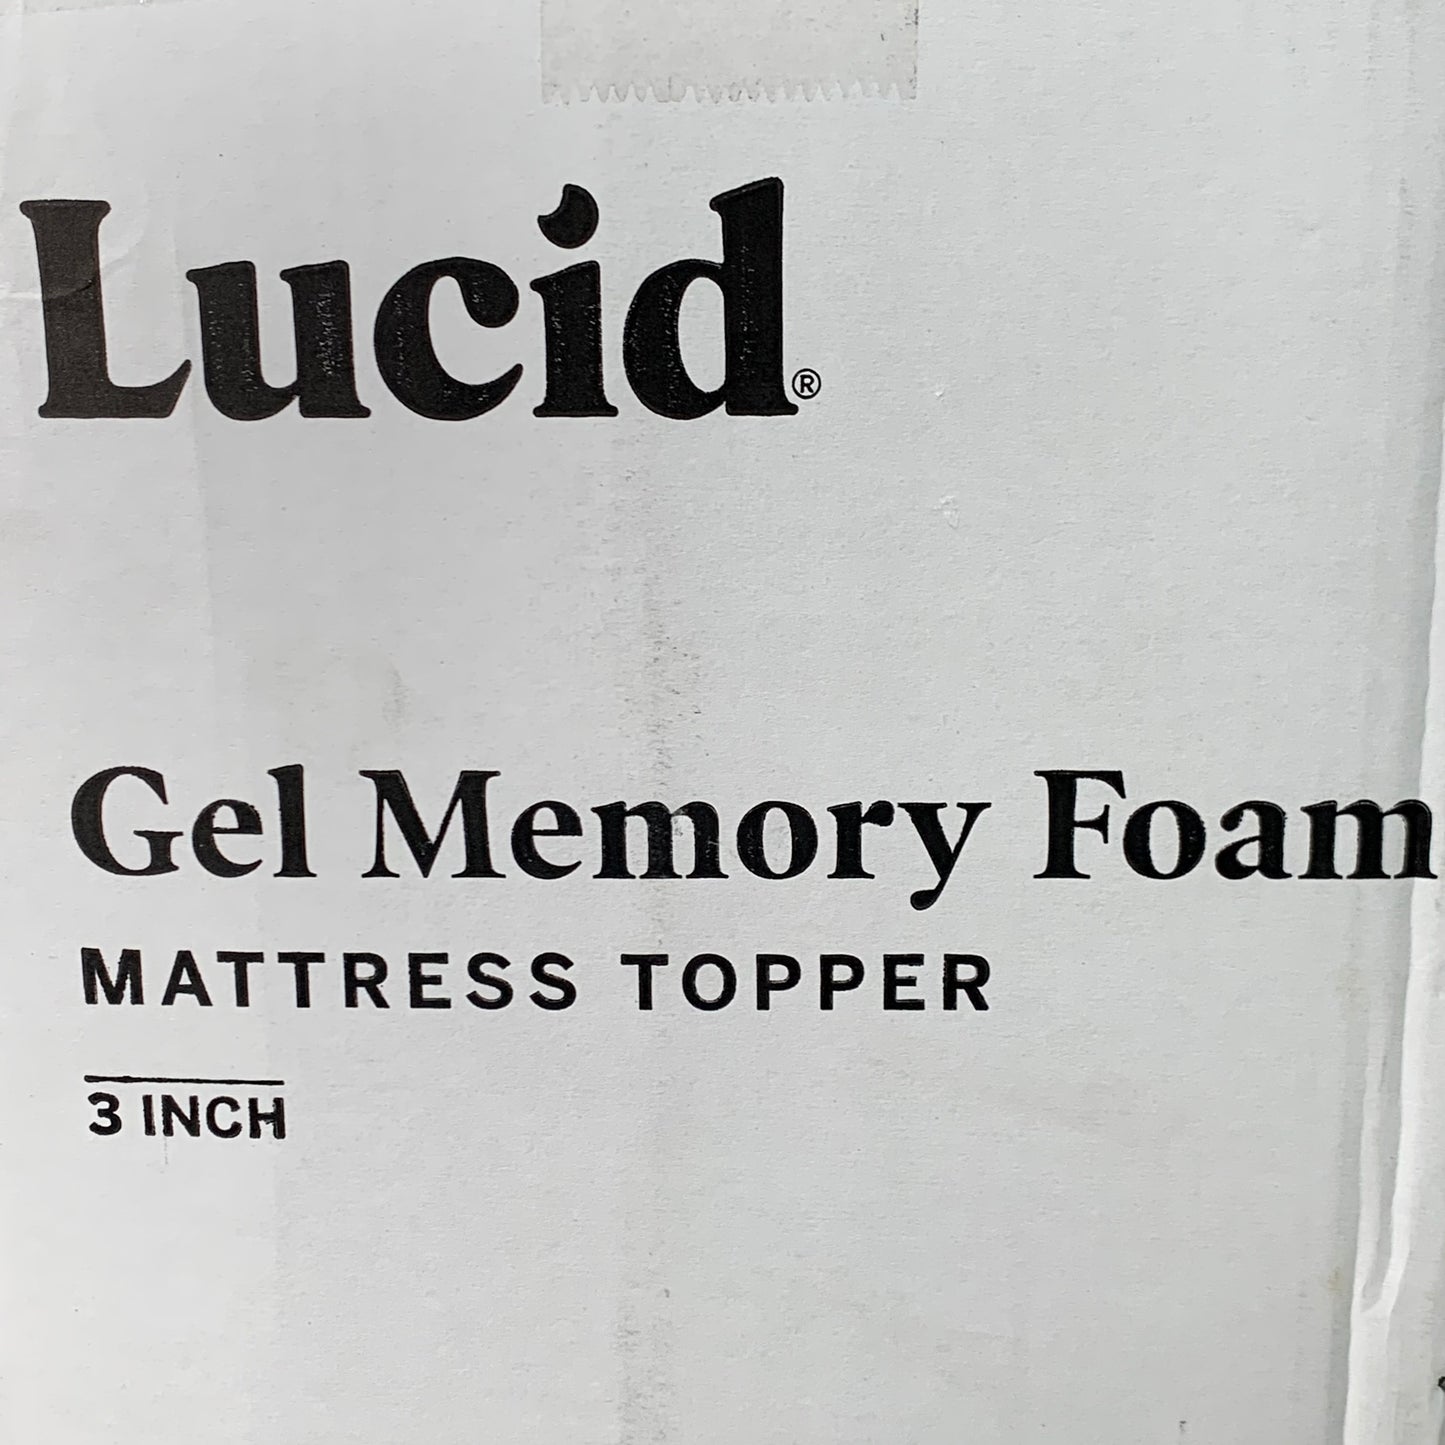 LUCID 3" Gel Memory Foam Mattress Topper Twin Blue LU30TT30GT New